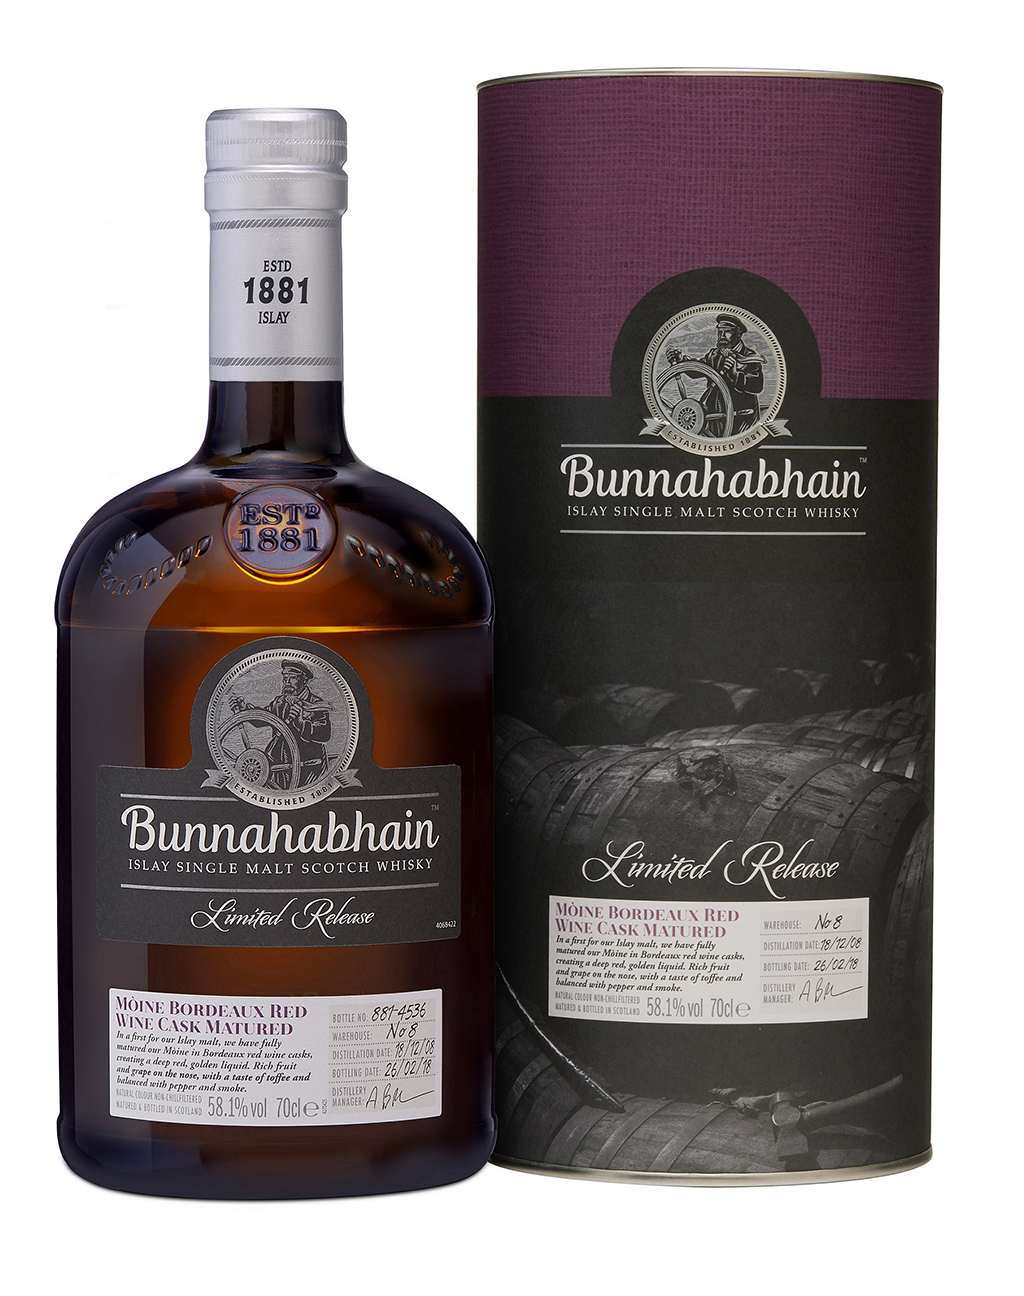 The Bunnahabhain 2008 Moine Bordeaux limited release